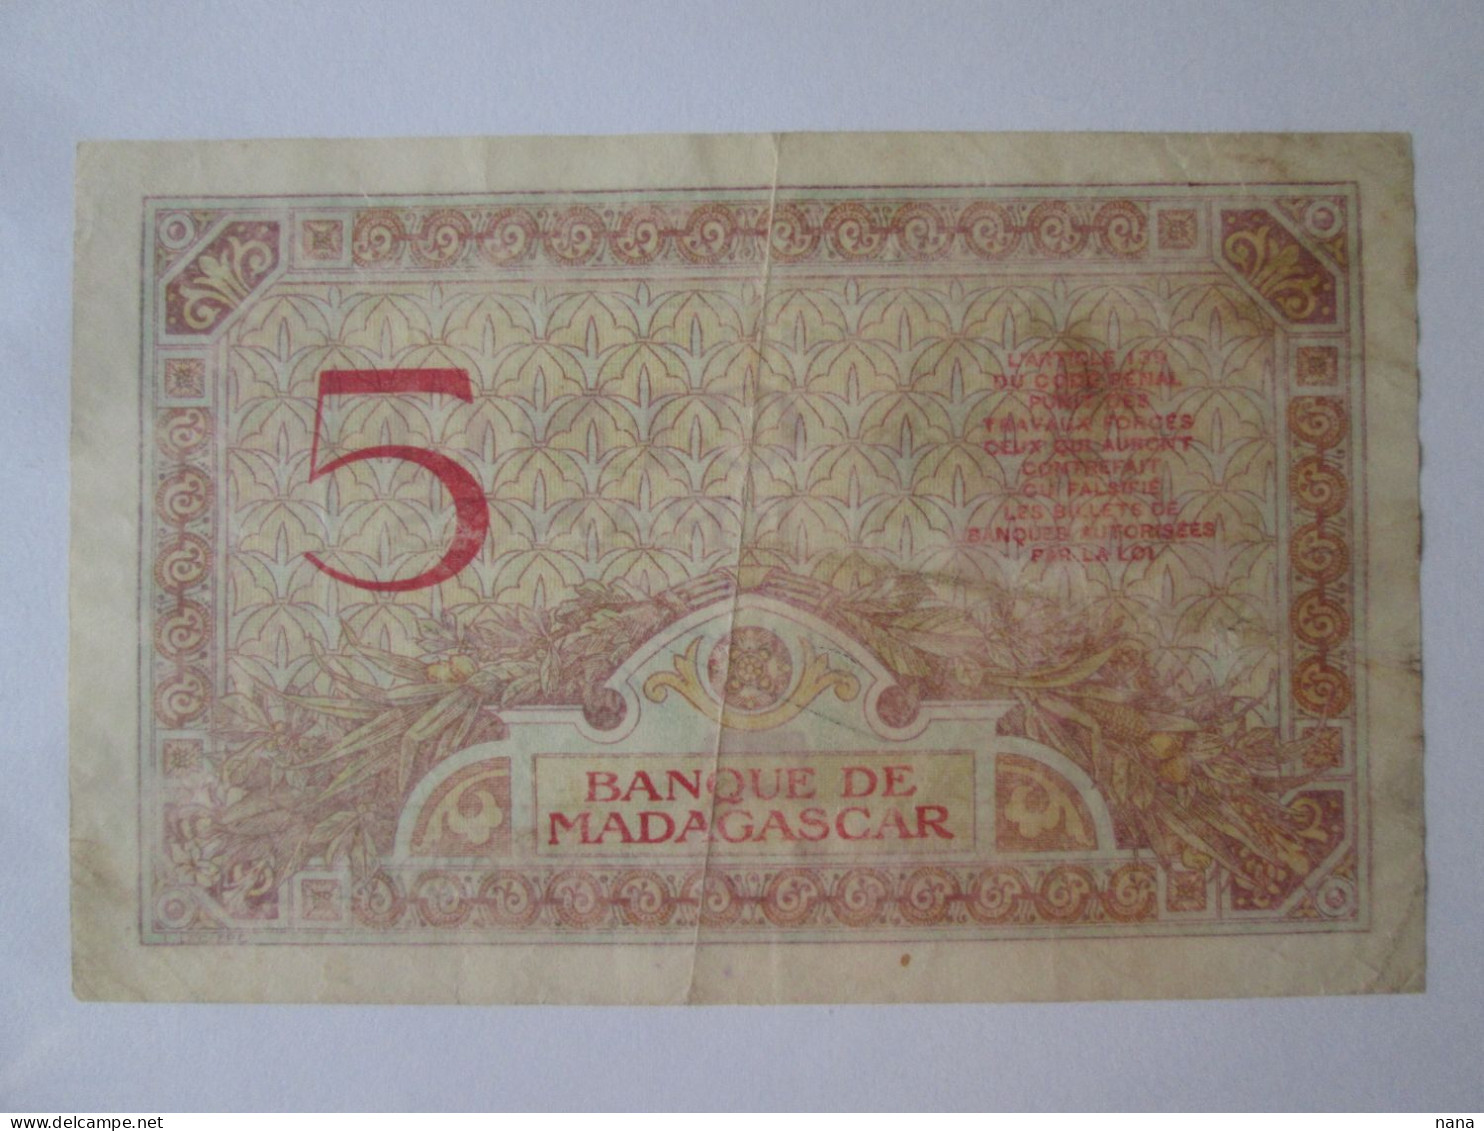 Madagascar 5 Francs 1937 Banknote,see Pictures - Madagaskar